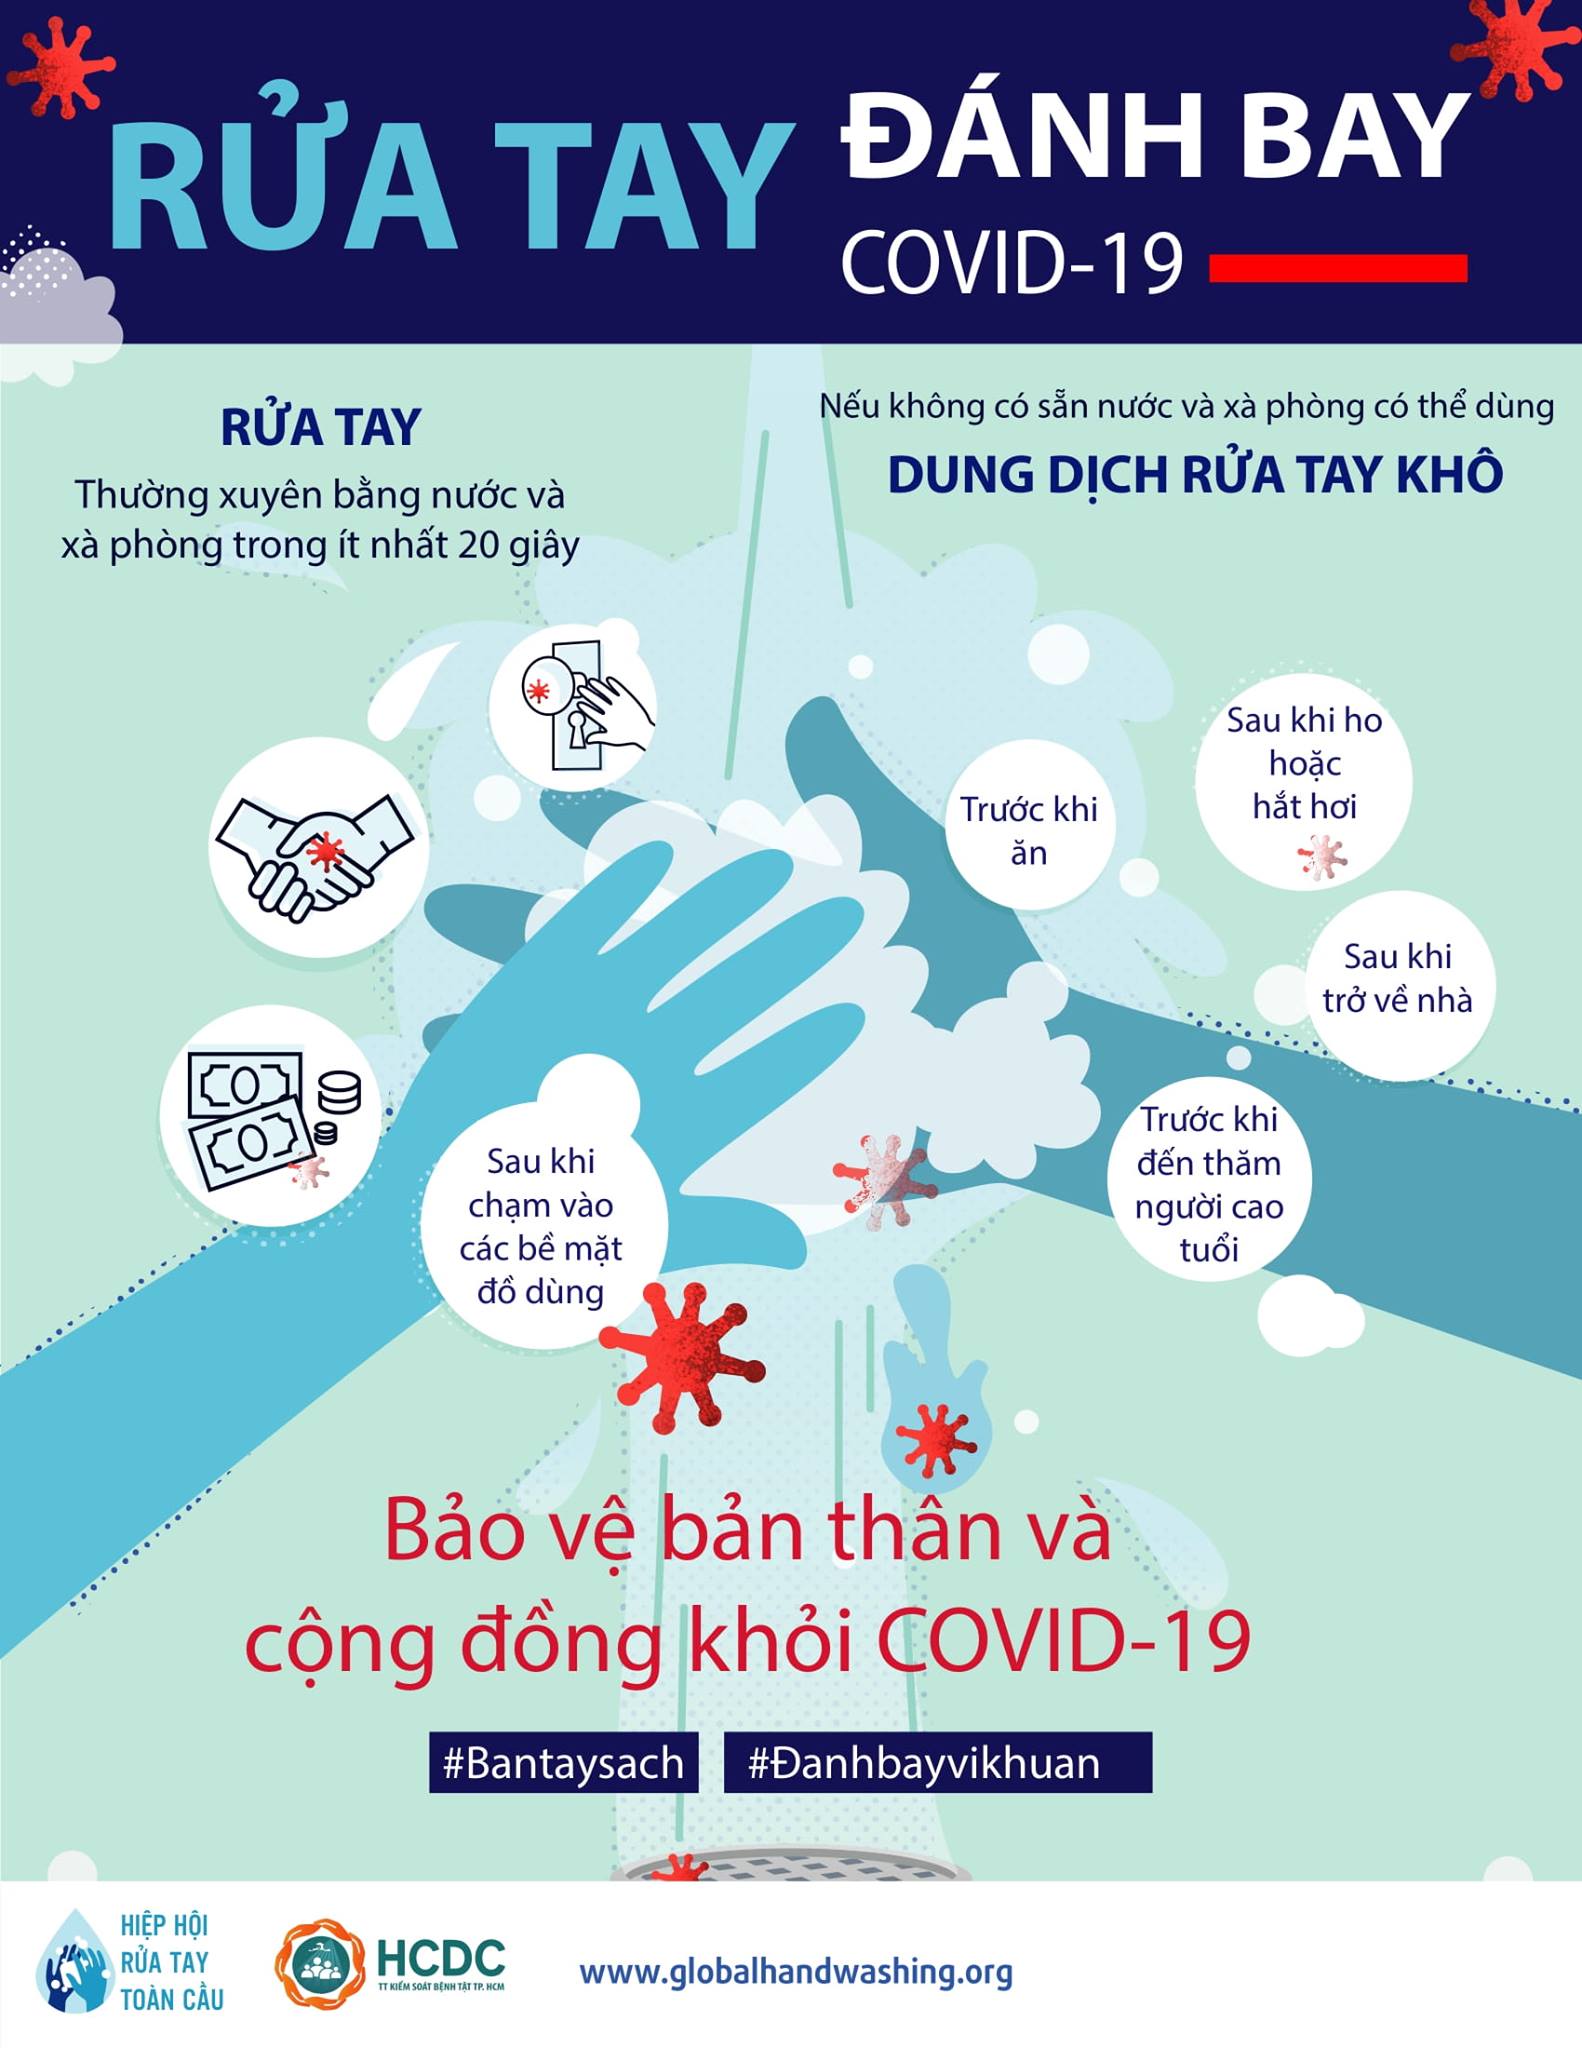 Thông tin về dịch bệnh COVID-19 tại TP.HCM (cập nhật sáng ngày 25/10/2021)